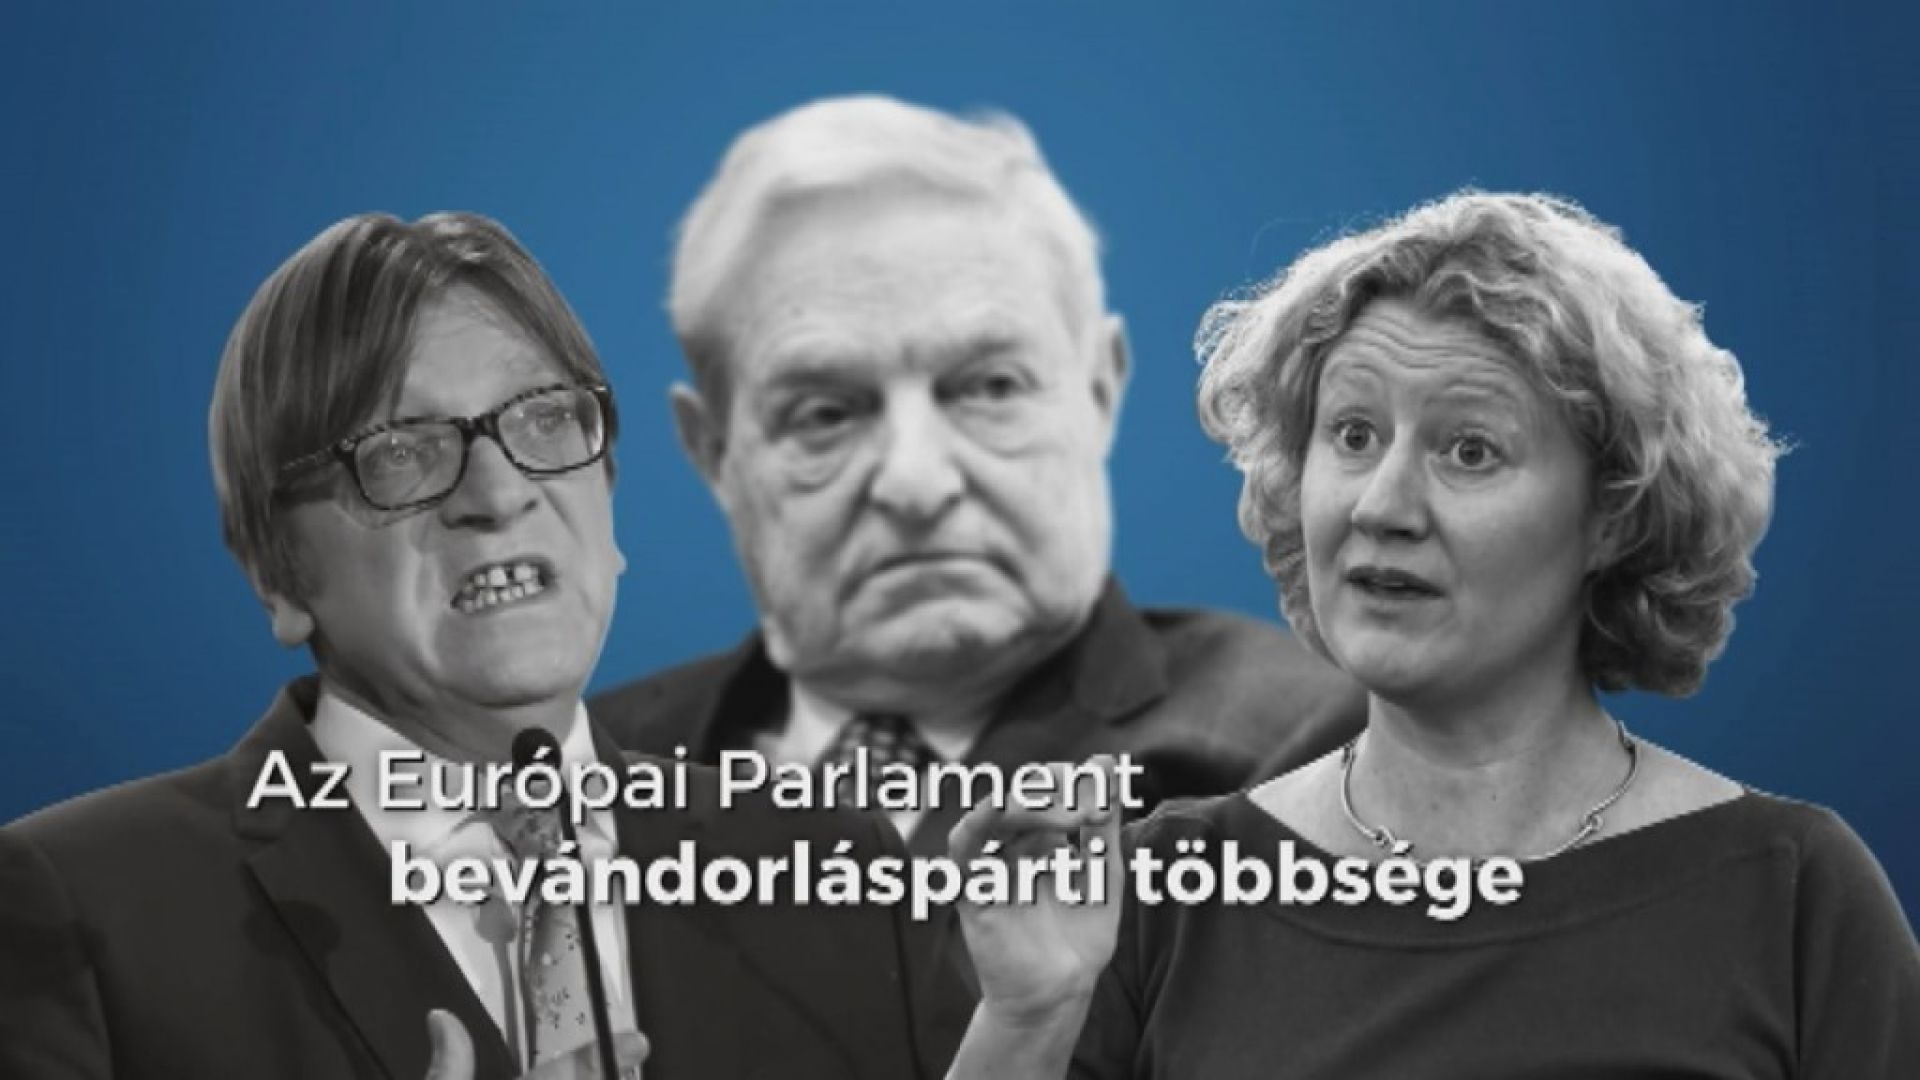 Правителството на Унгария тиражира рекламен клип в отговор на критиките